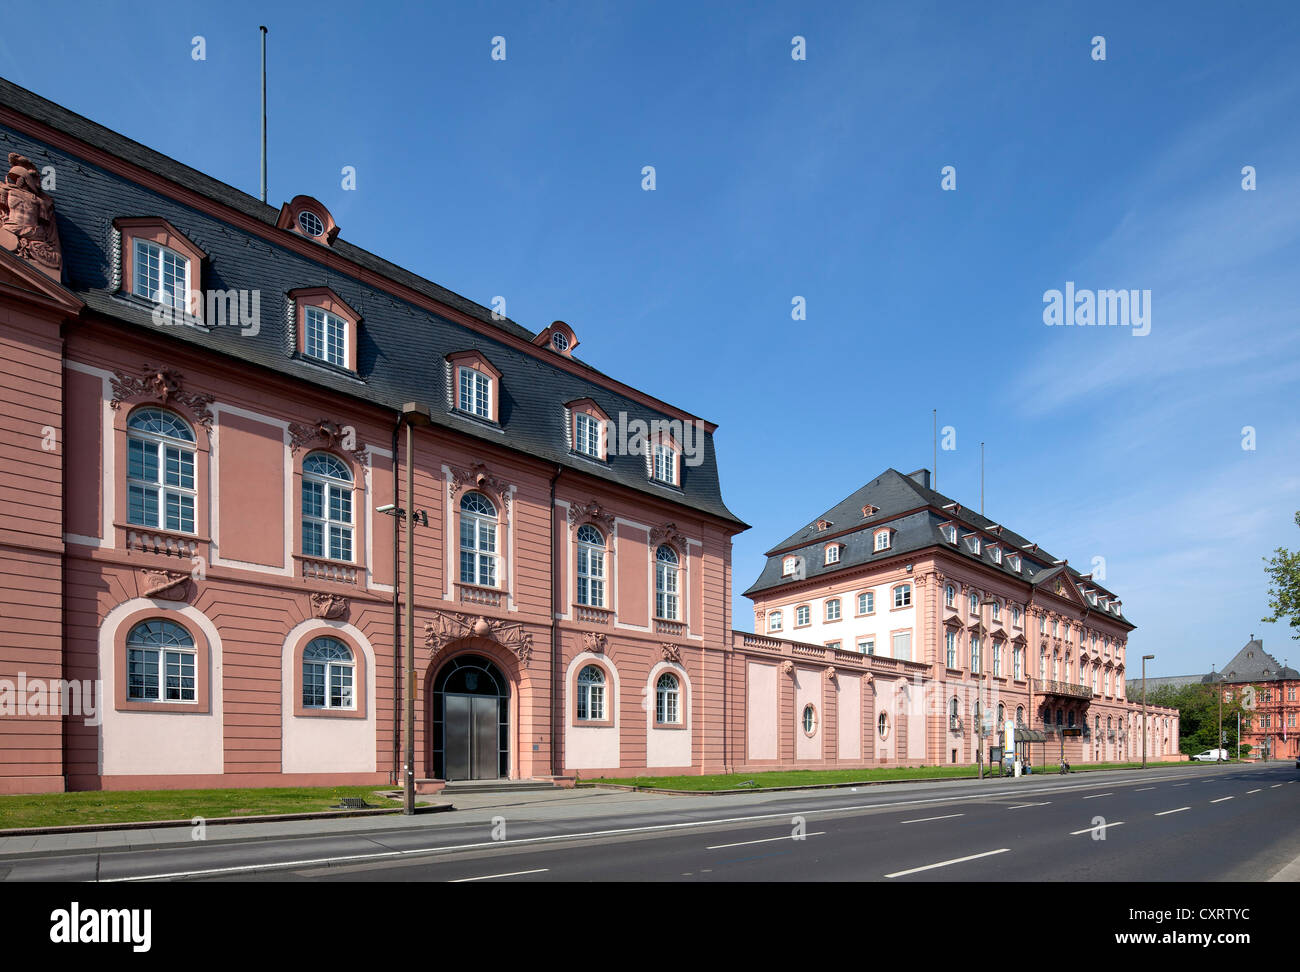 Ex Deutschordenshaus o casa de la Orden Teutónica, sesiones plenarias y edificios administrativos de la Renania-palatinado Foto de stock